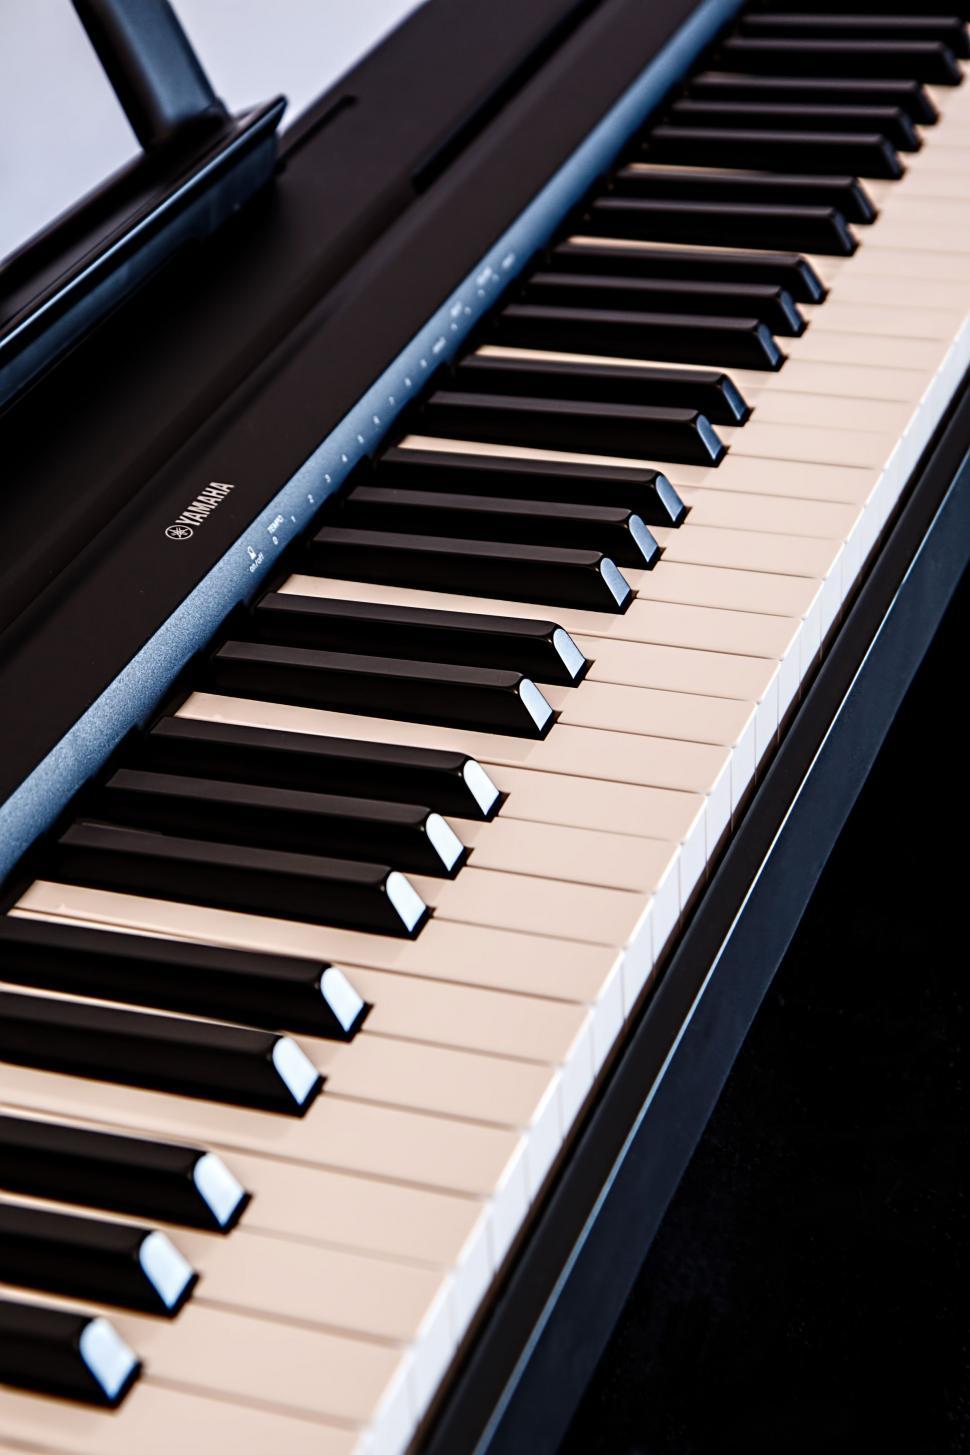 Free Image of piano keyboard music notes instrument keys yamaha synthesizer 